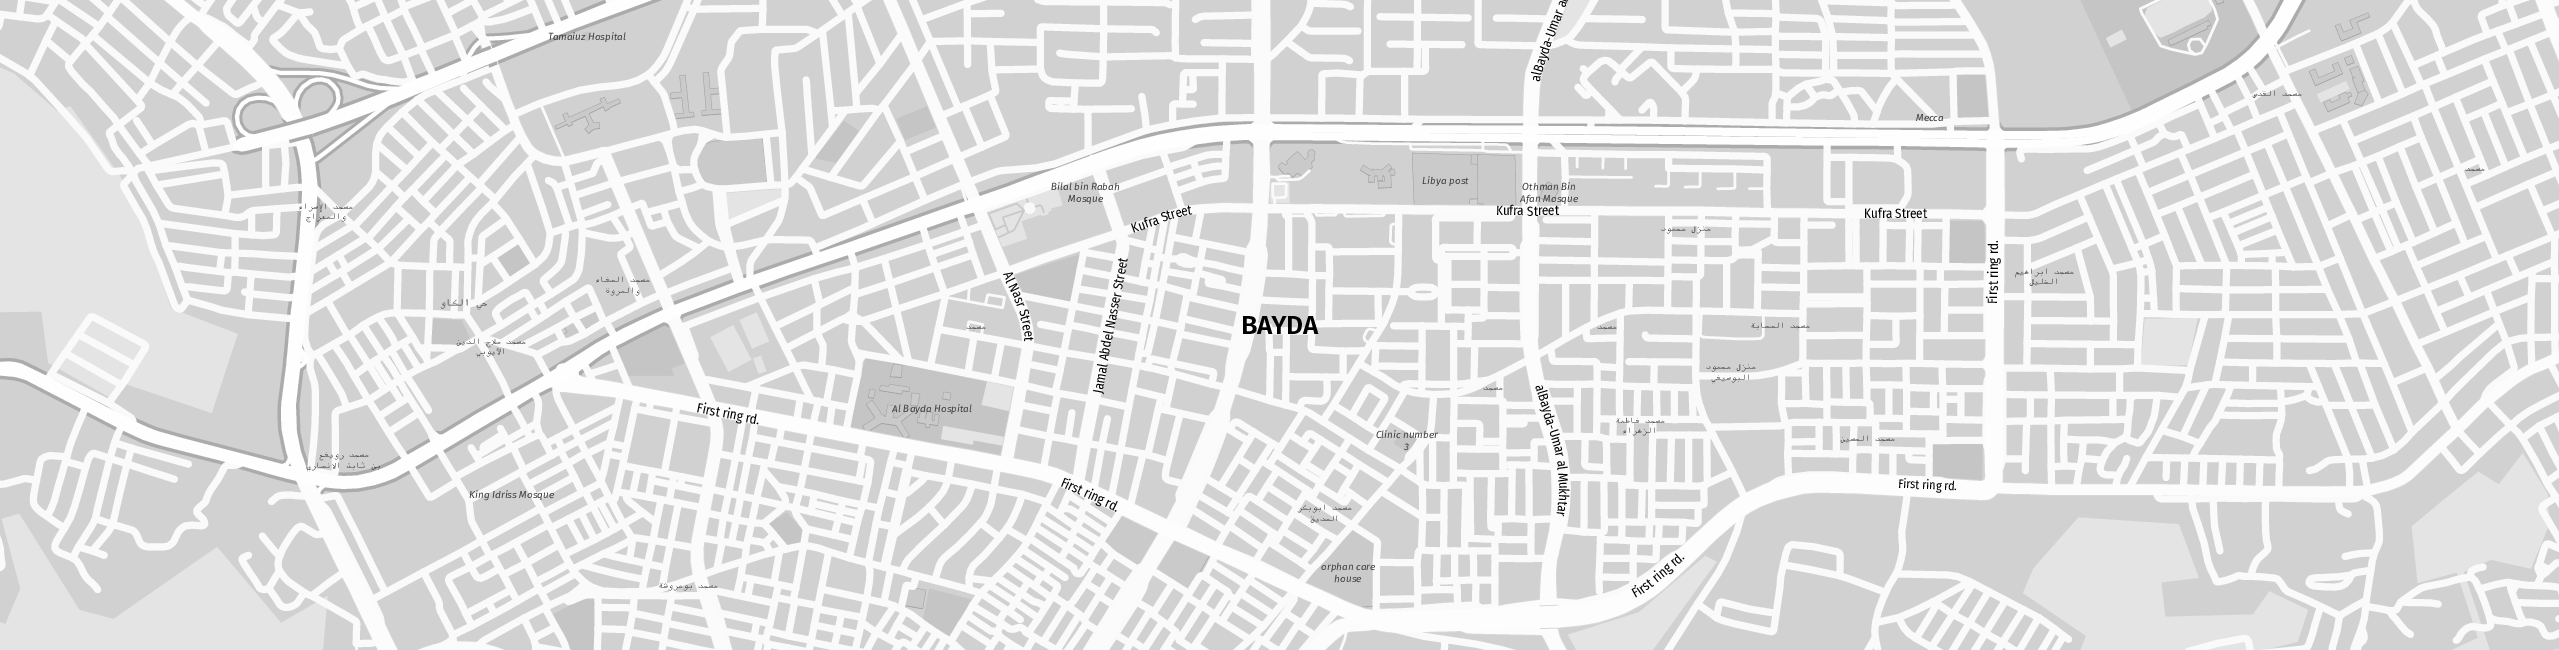 Stadtplan Bayda zum Downloaden.